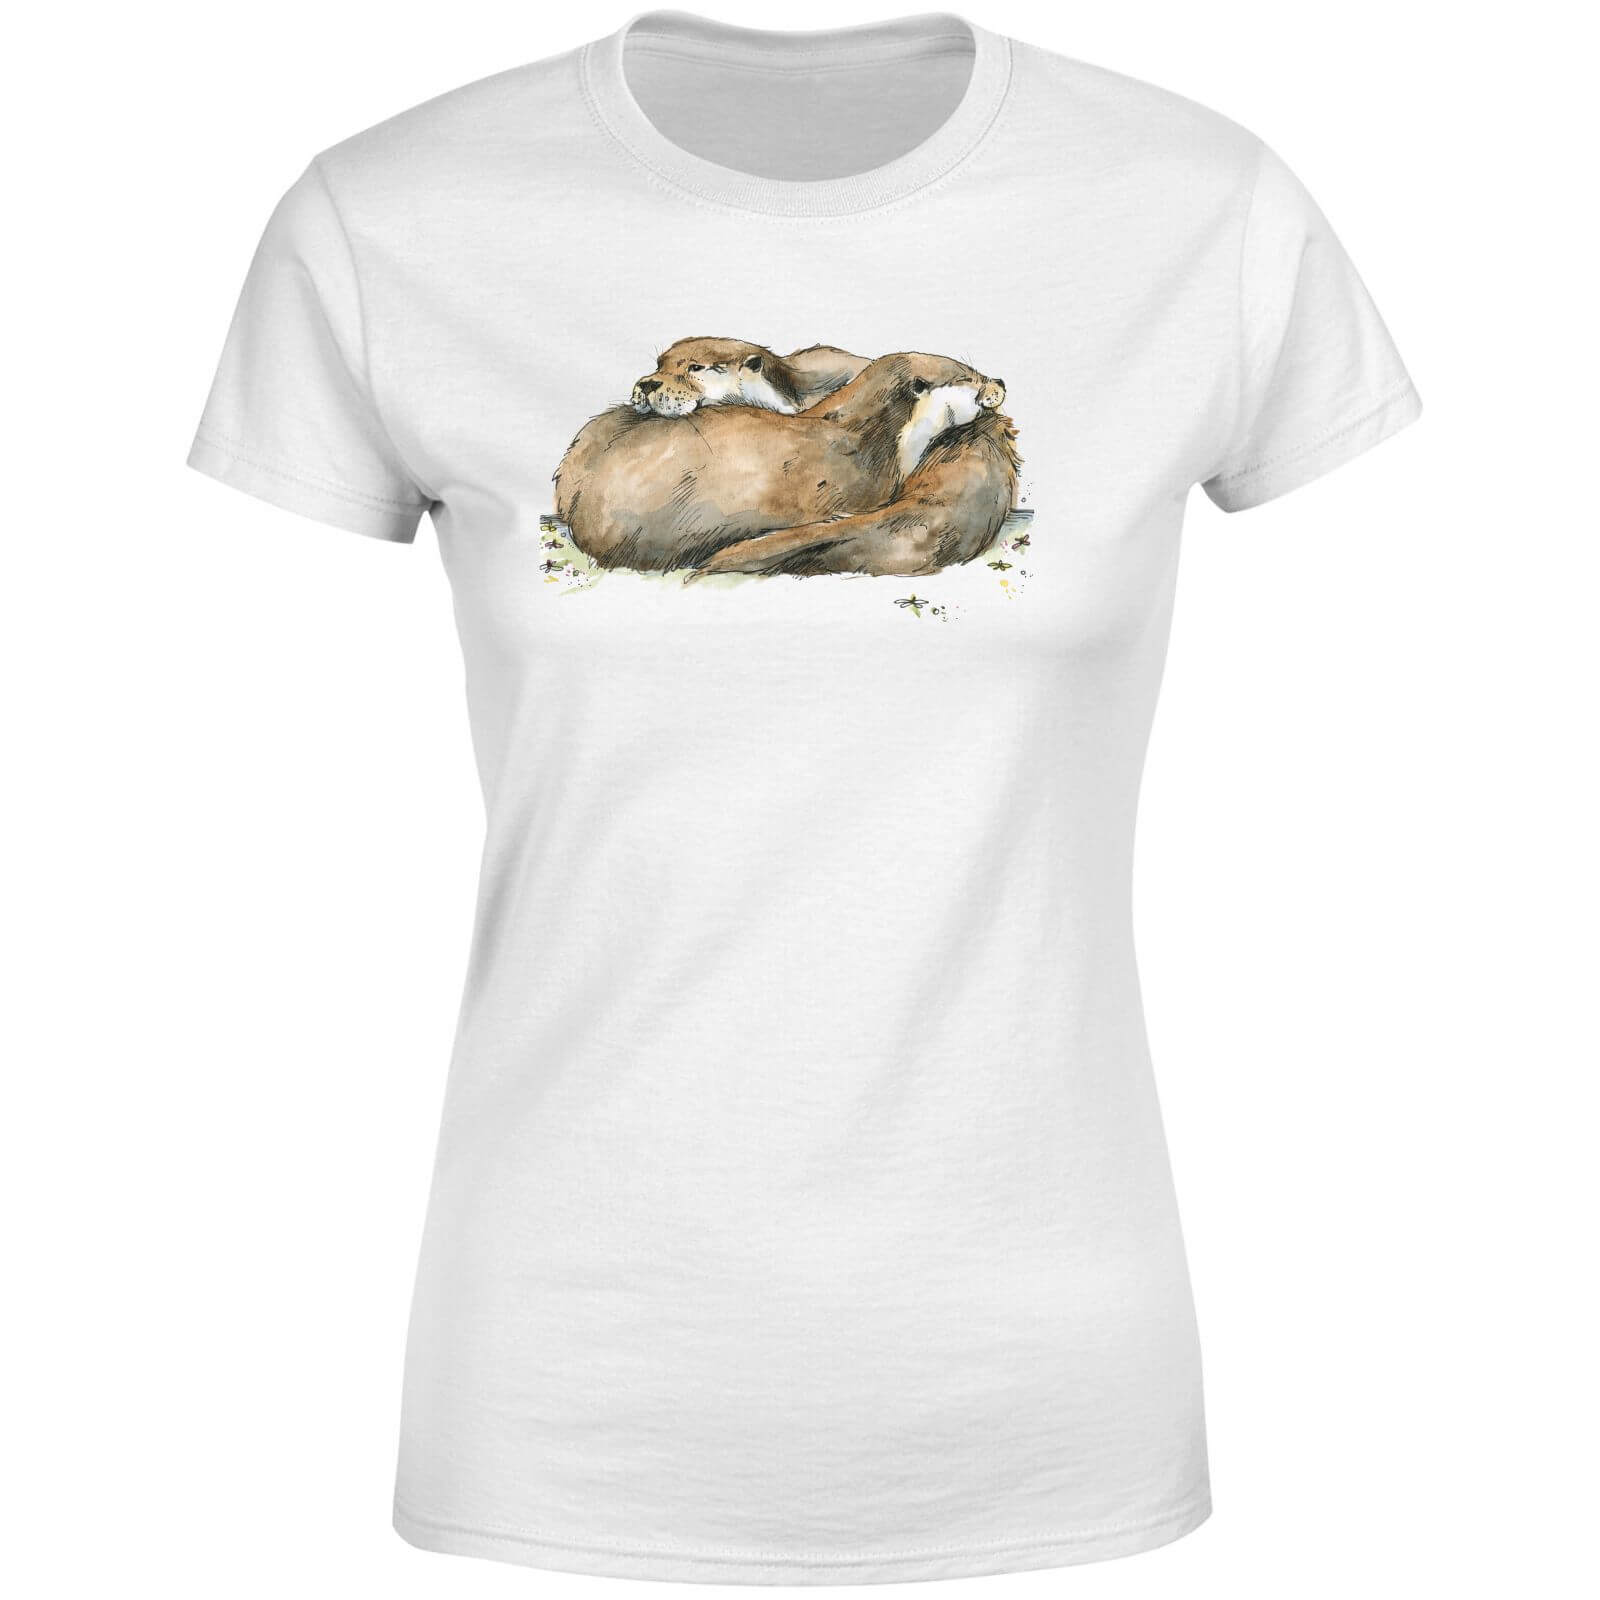 Snowtap Otters Women's T-Shirt - White - S - White